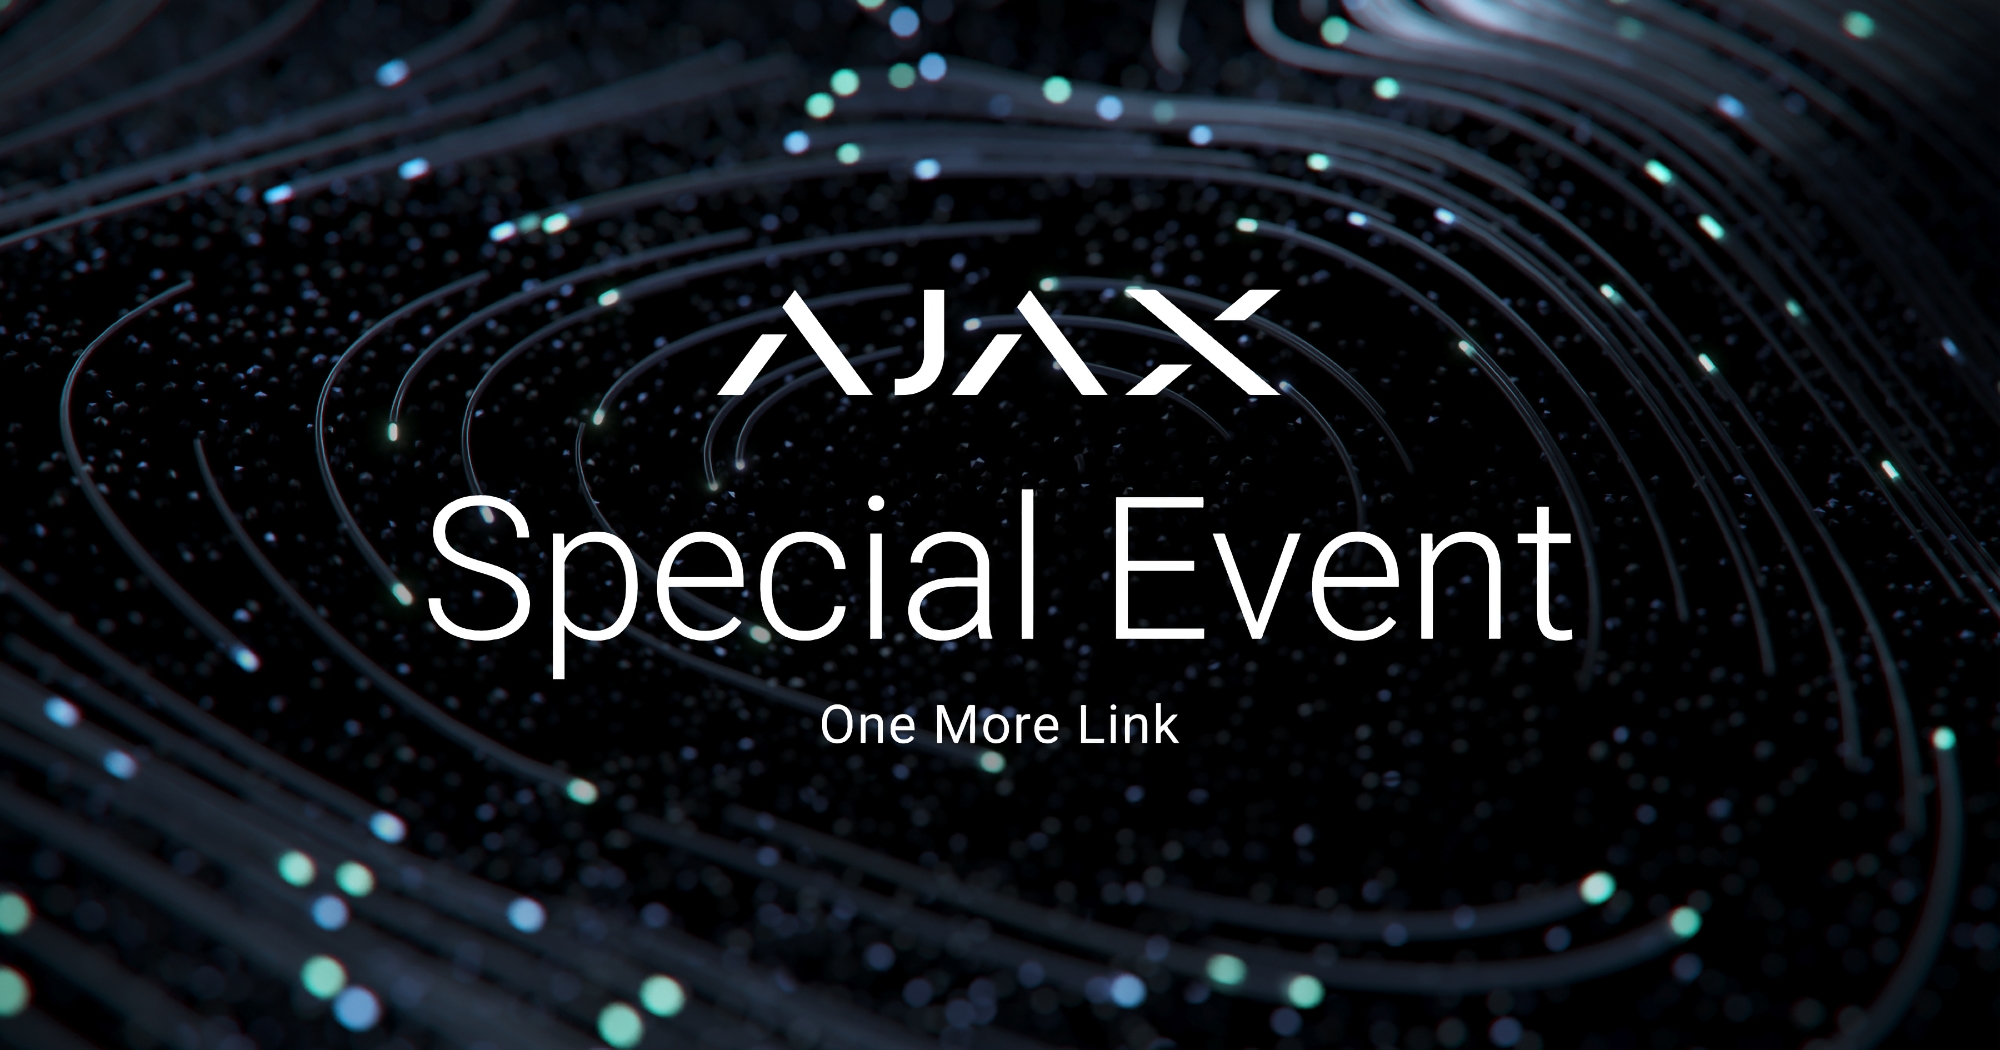 Ajax introdujo la tecnología Fibra cableada con una nueva línea de dispositivos